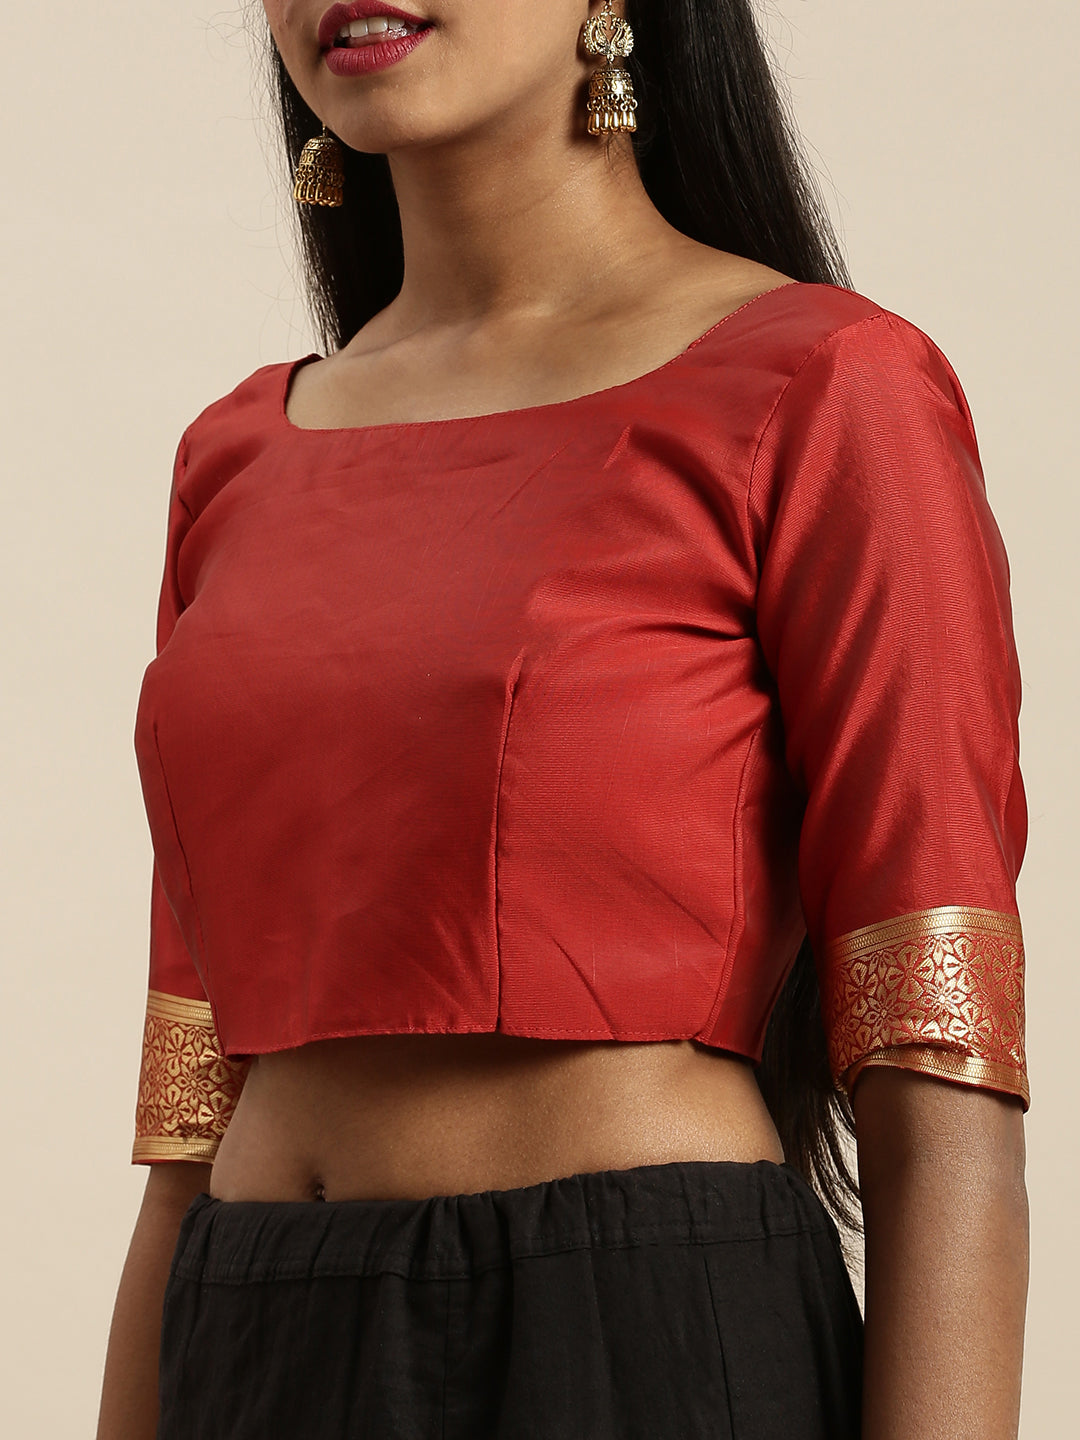 Wonderful Red Color Banarasi Silk Saree